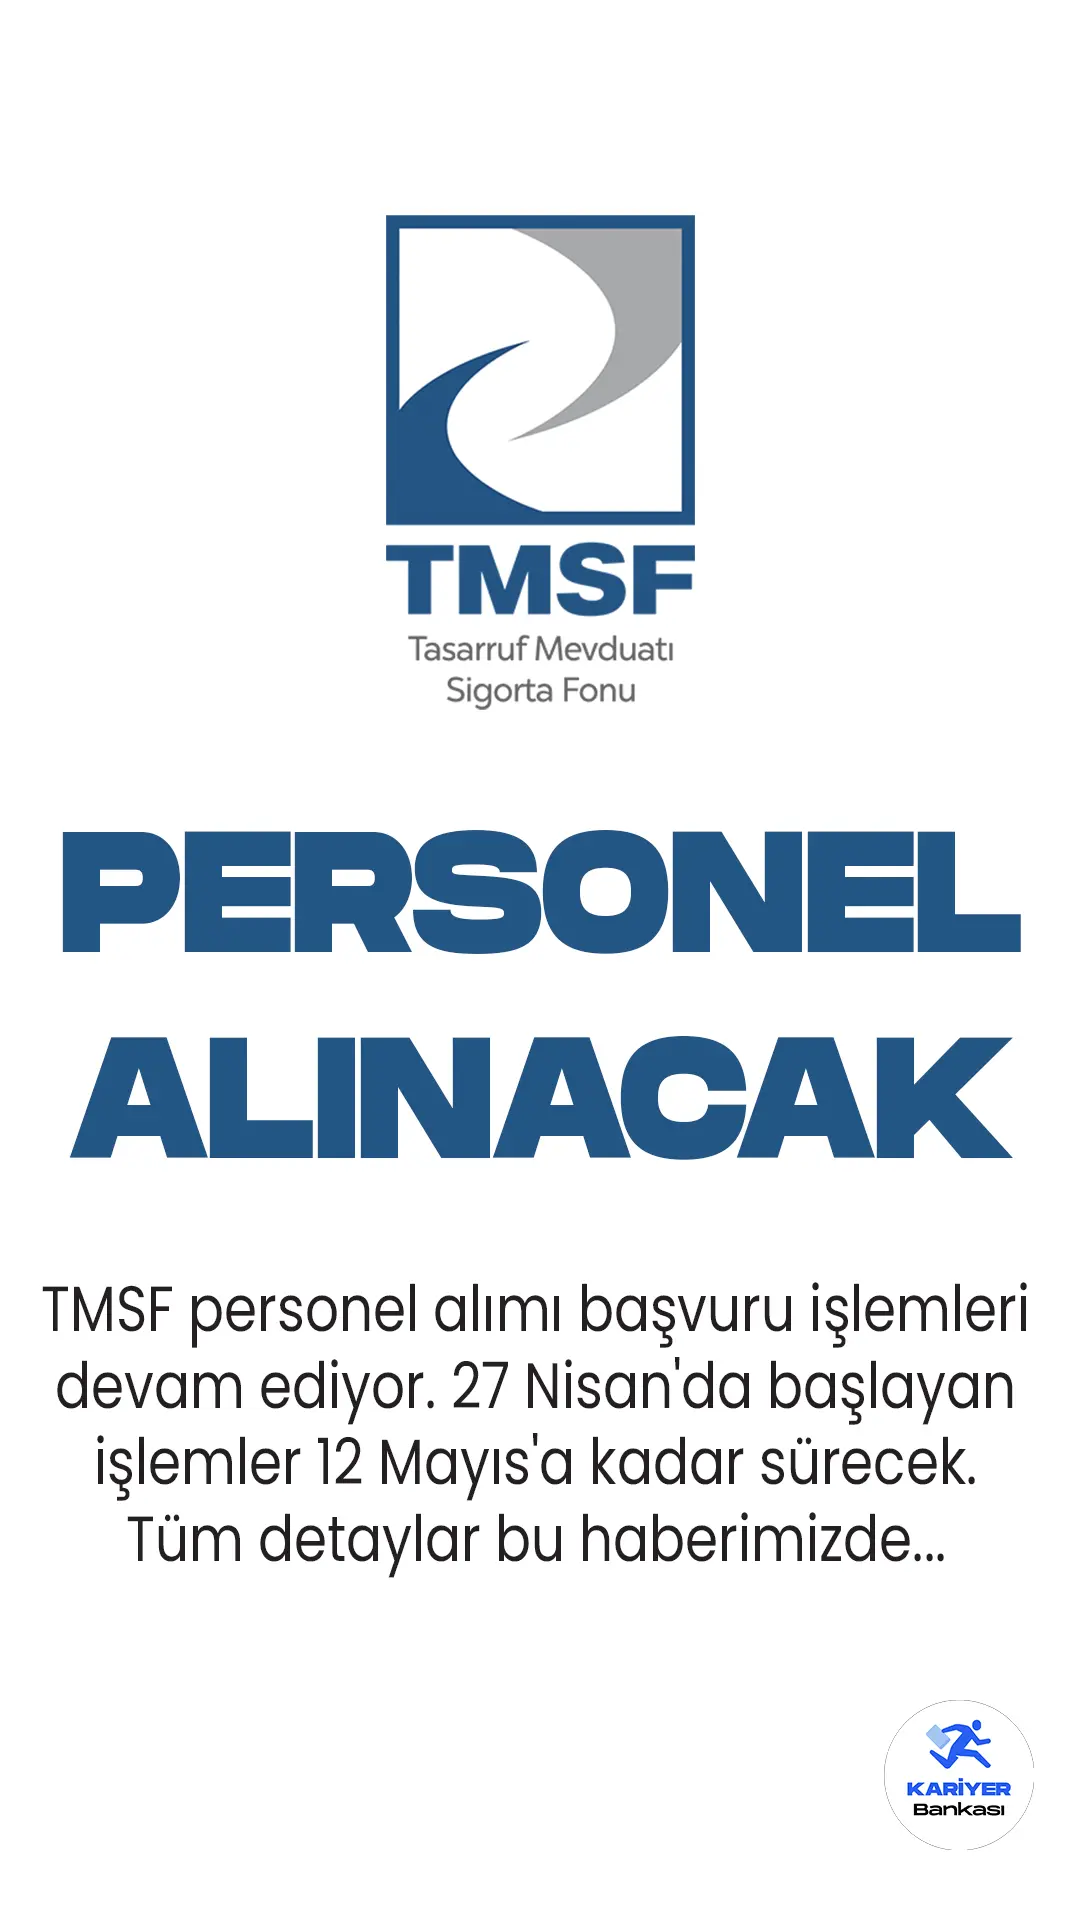 TMSF personel alımı başvuru işlemleri devam ediyor. 27 Nisan'da başlayan TMSF fon uzman yardımcısı alımı için başvurular 12 Mayıs'a kadar alınacak.